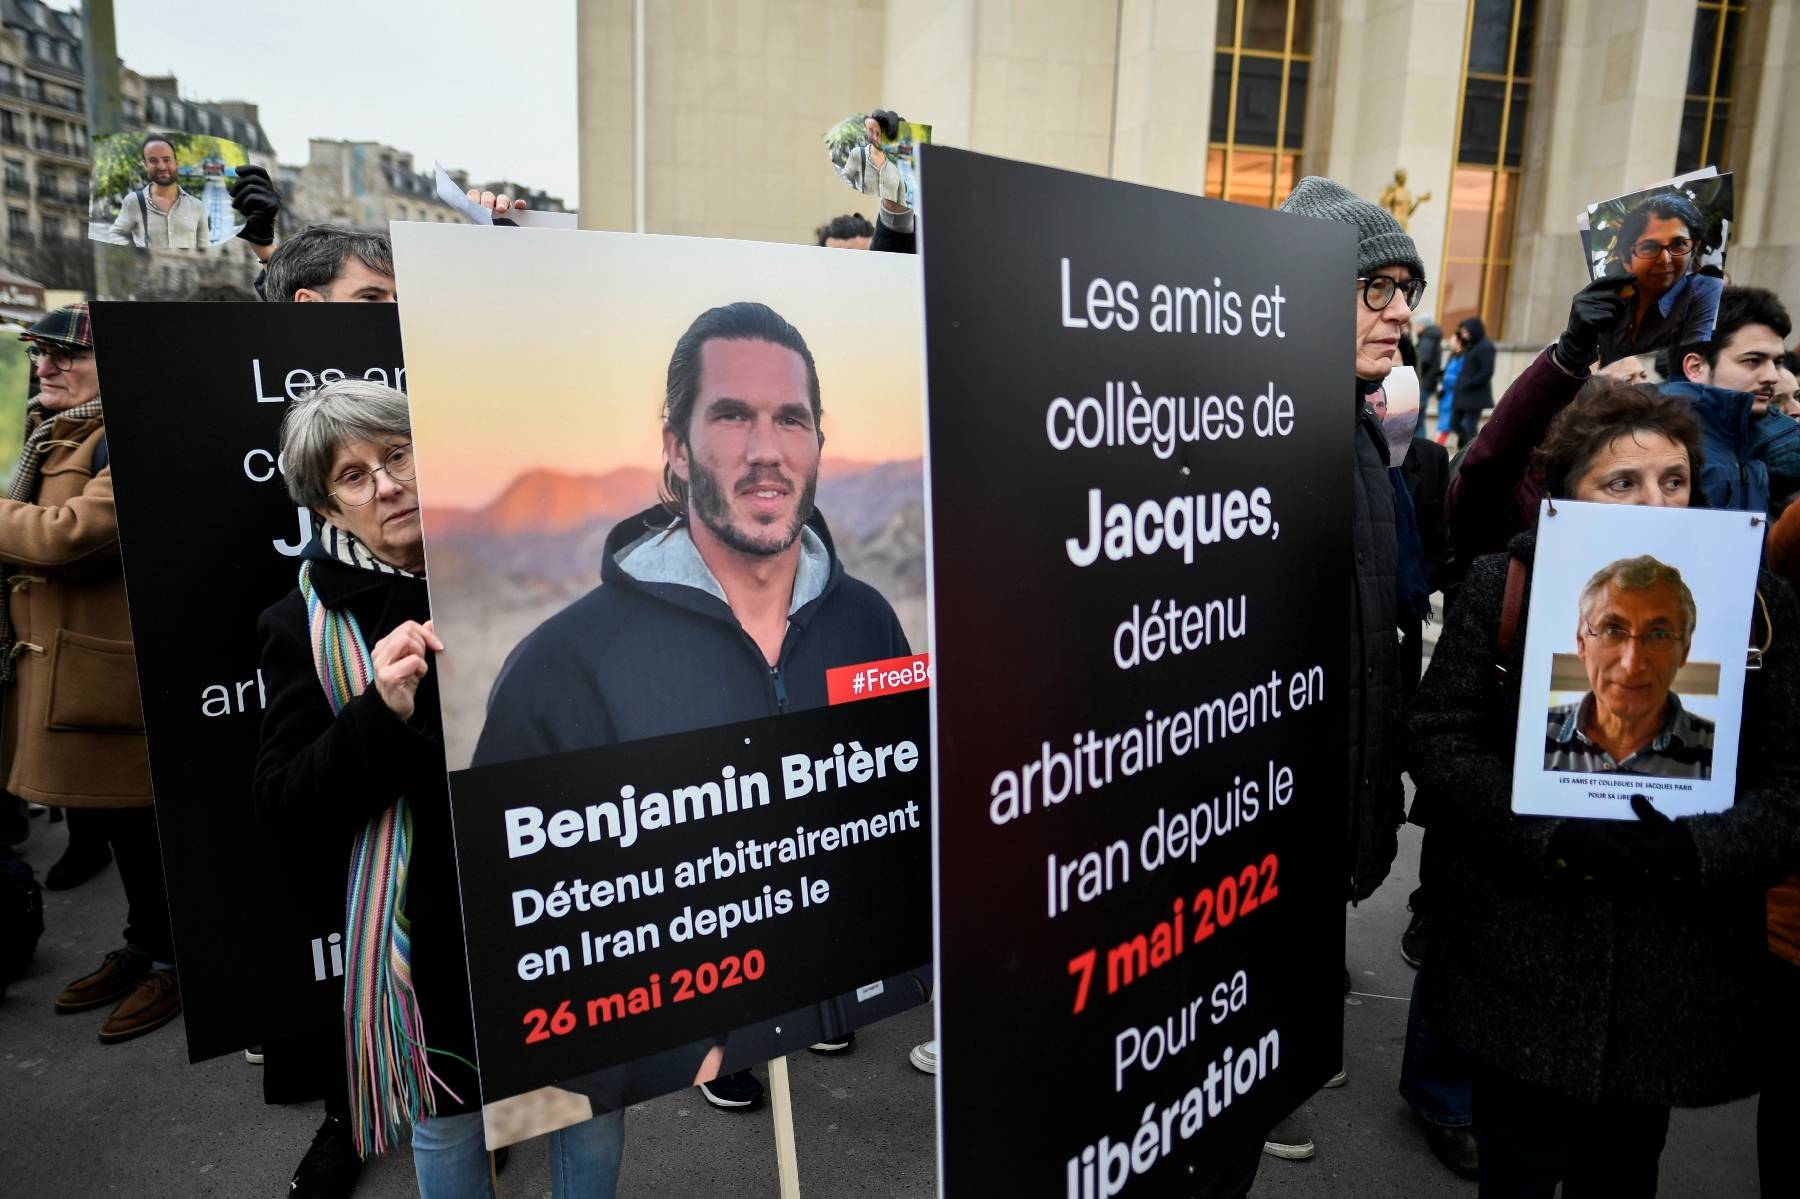 En Iran, le Français Benjamin Brière acquitté mais toujours en prison